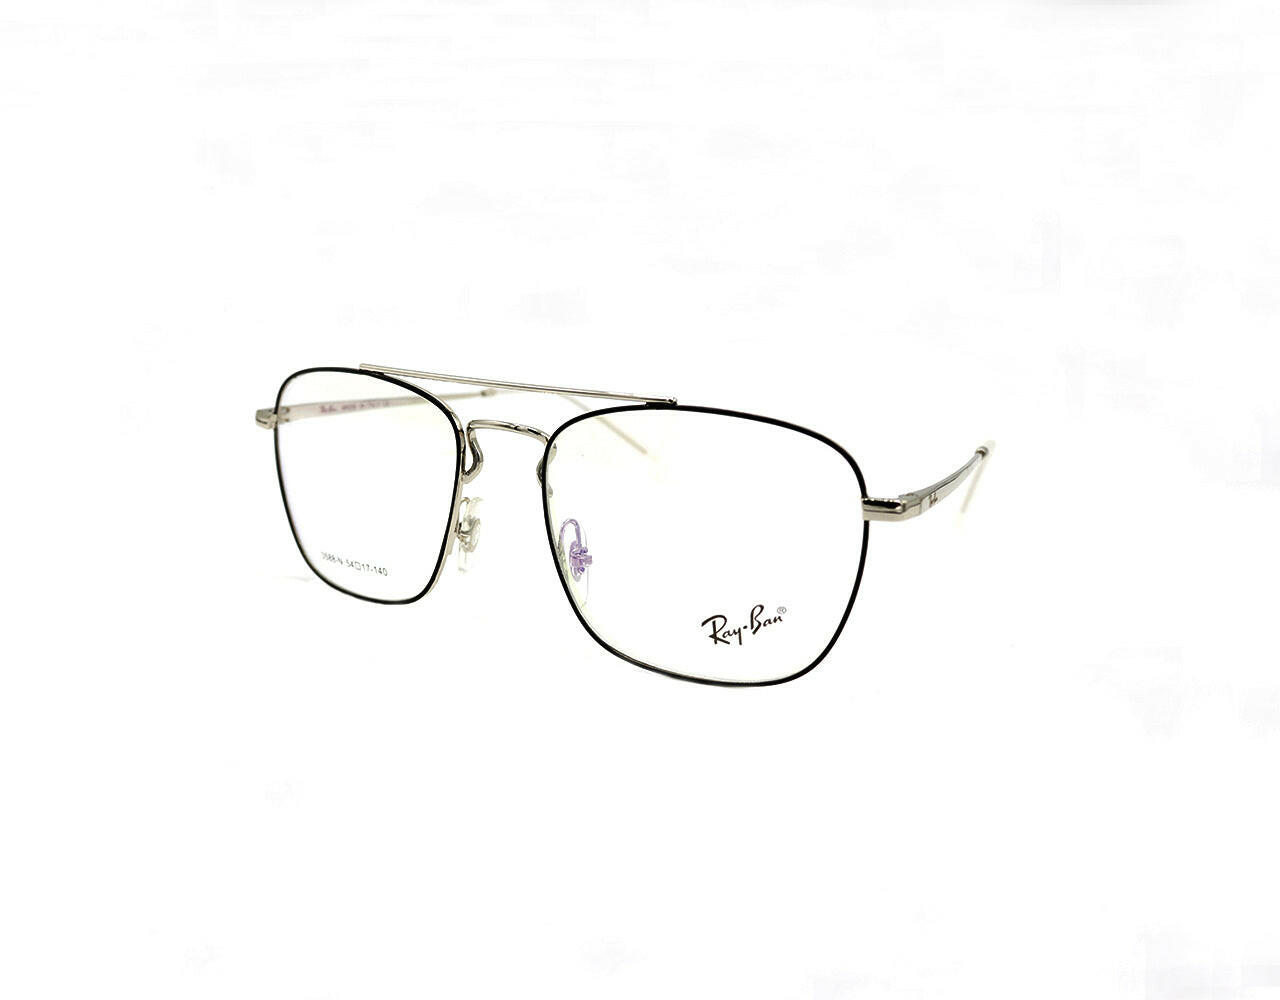 NS Luxury - 3588 - Silver - Eyeglasses - Nainsukh